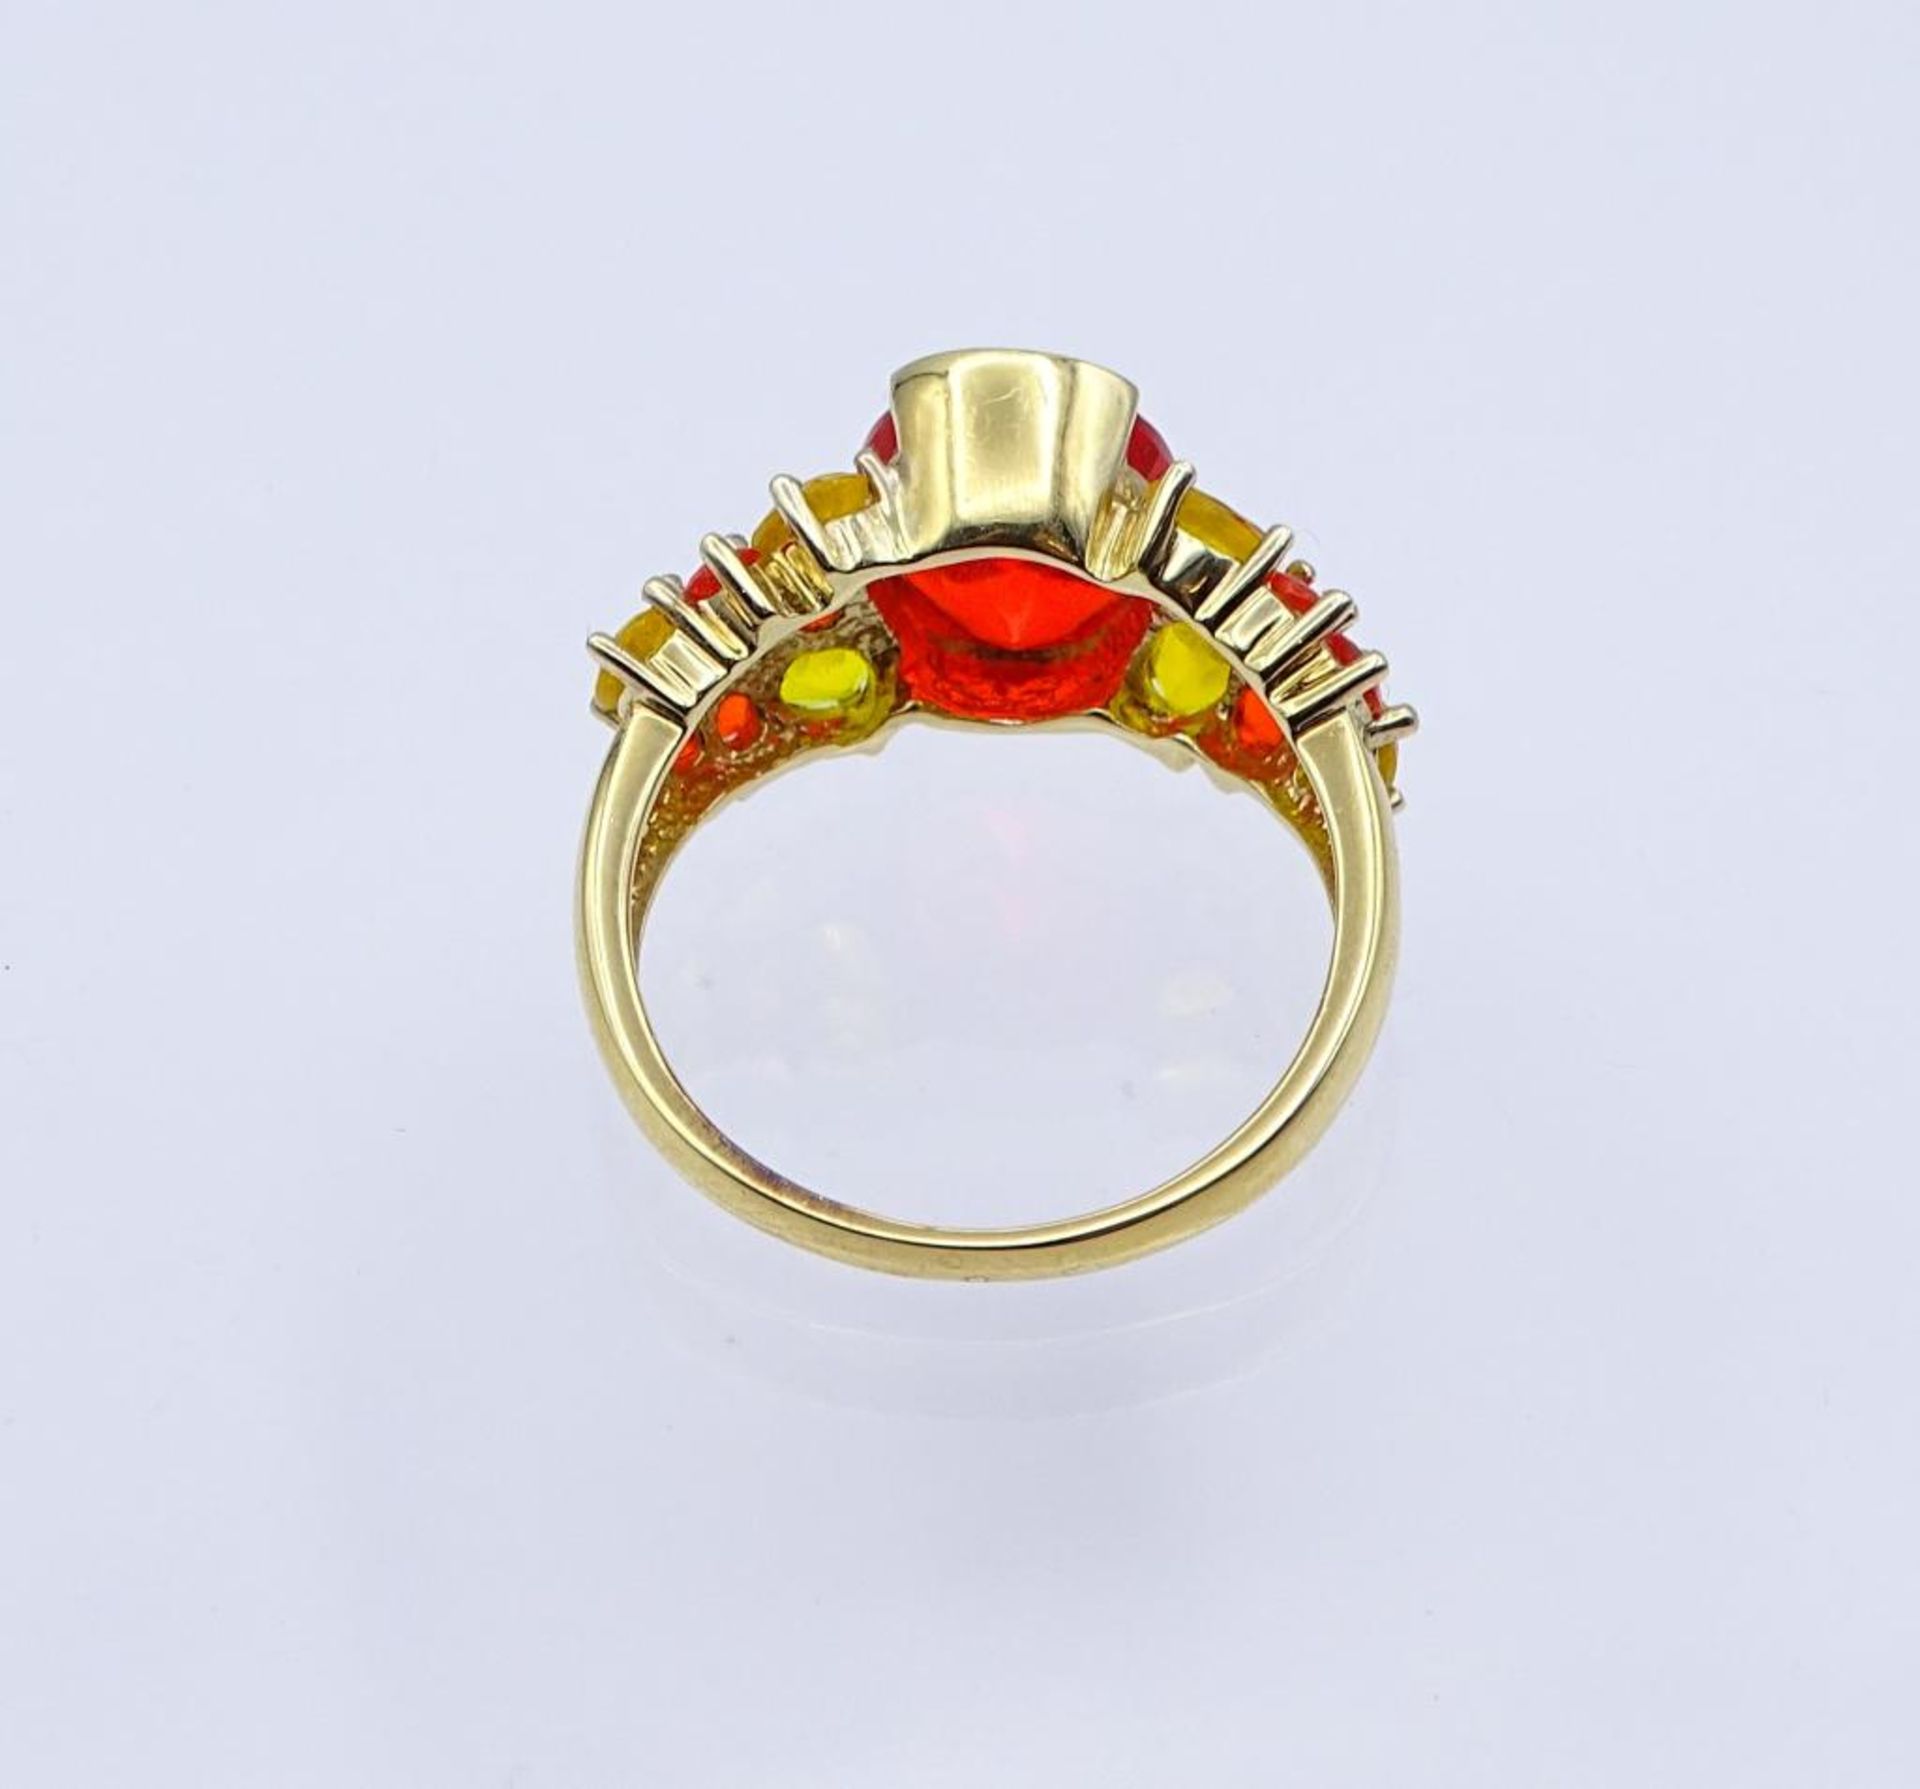 Silber Ring mit roten und gelben Steinen,vergoldet, Silber 925/000, 4,5gr., RG 60- - -22.61 % - Bild 3 aus 3